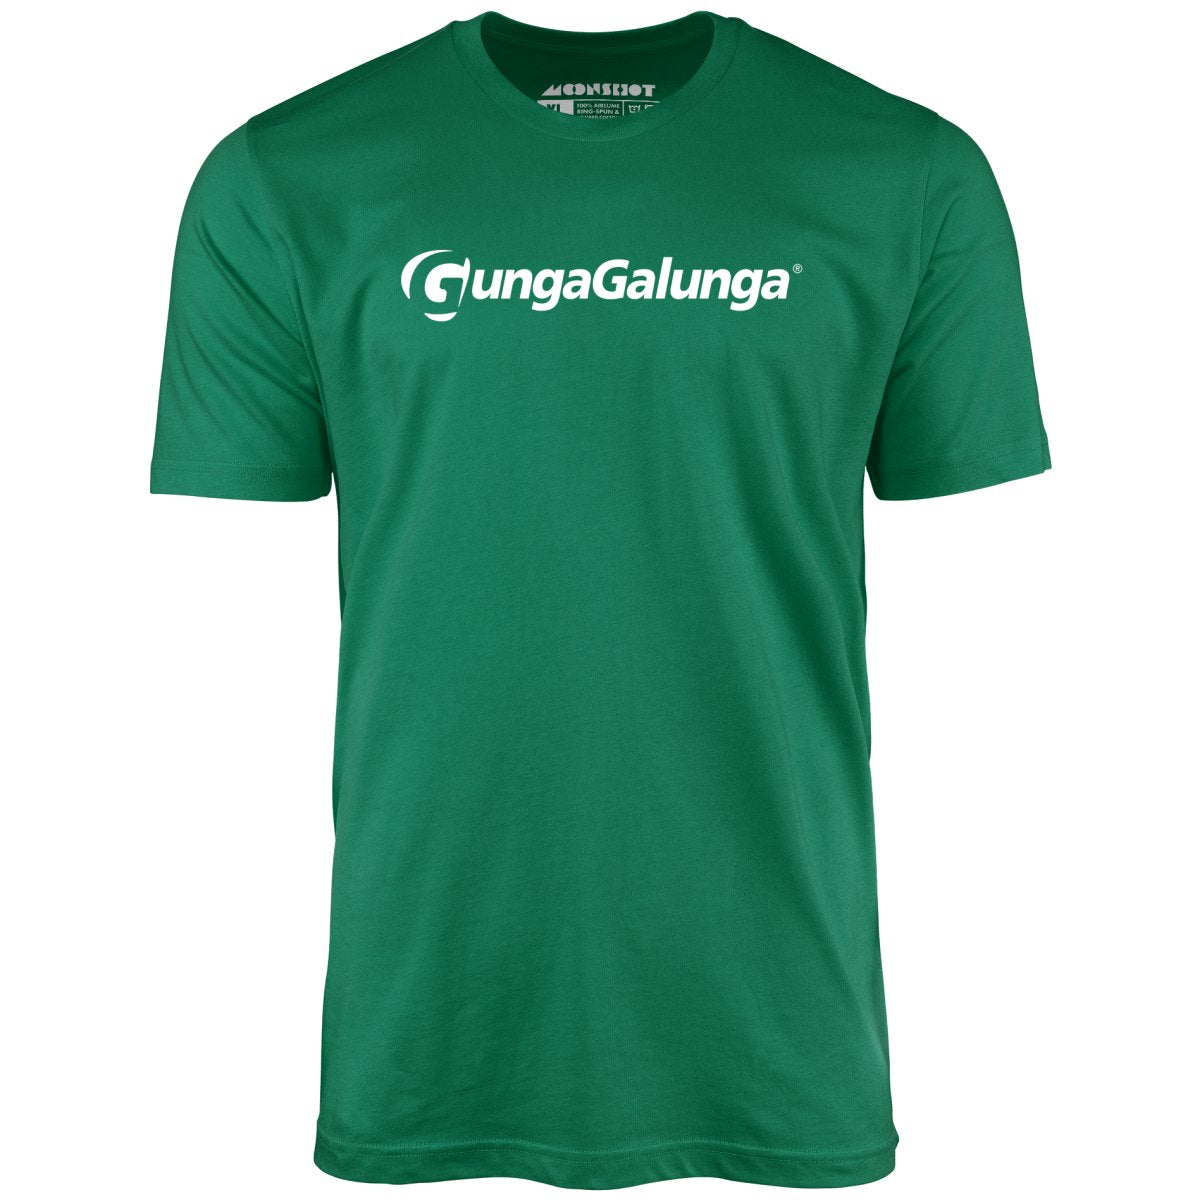 Gunga Galunga - Unisex T-Shirt